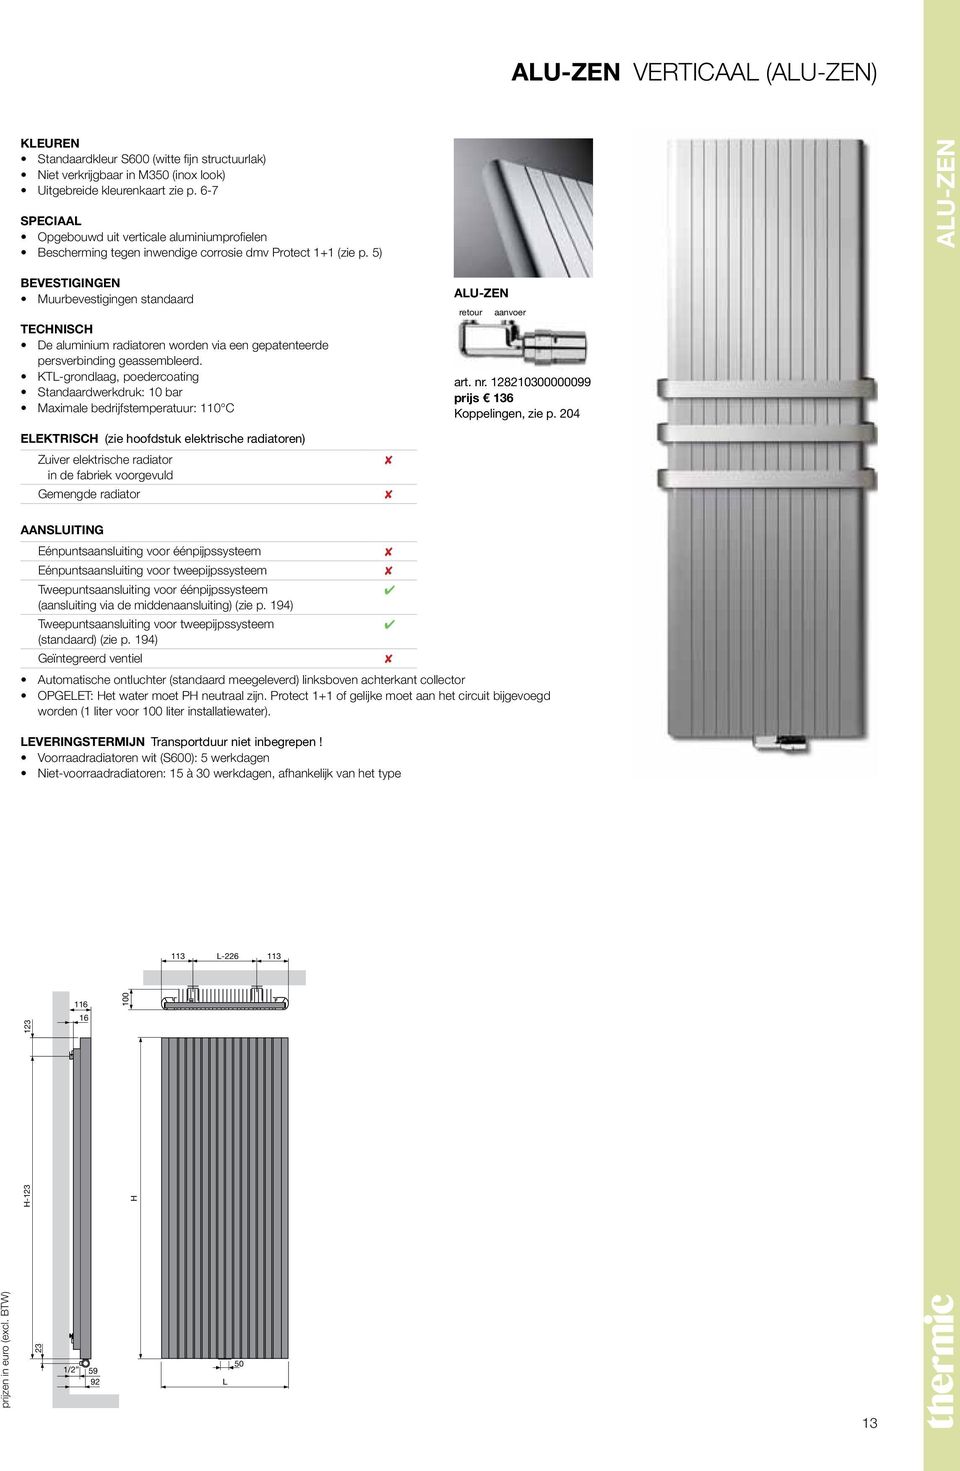 5) Alu-Zen Bevestigingen Muurbevestigingen standaard Technisch De aluminium radiatoren worden via een gepatenteerde persverbinding geassembleerd.